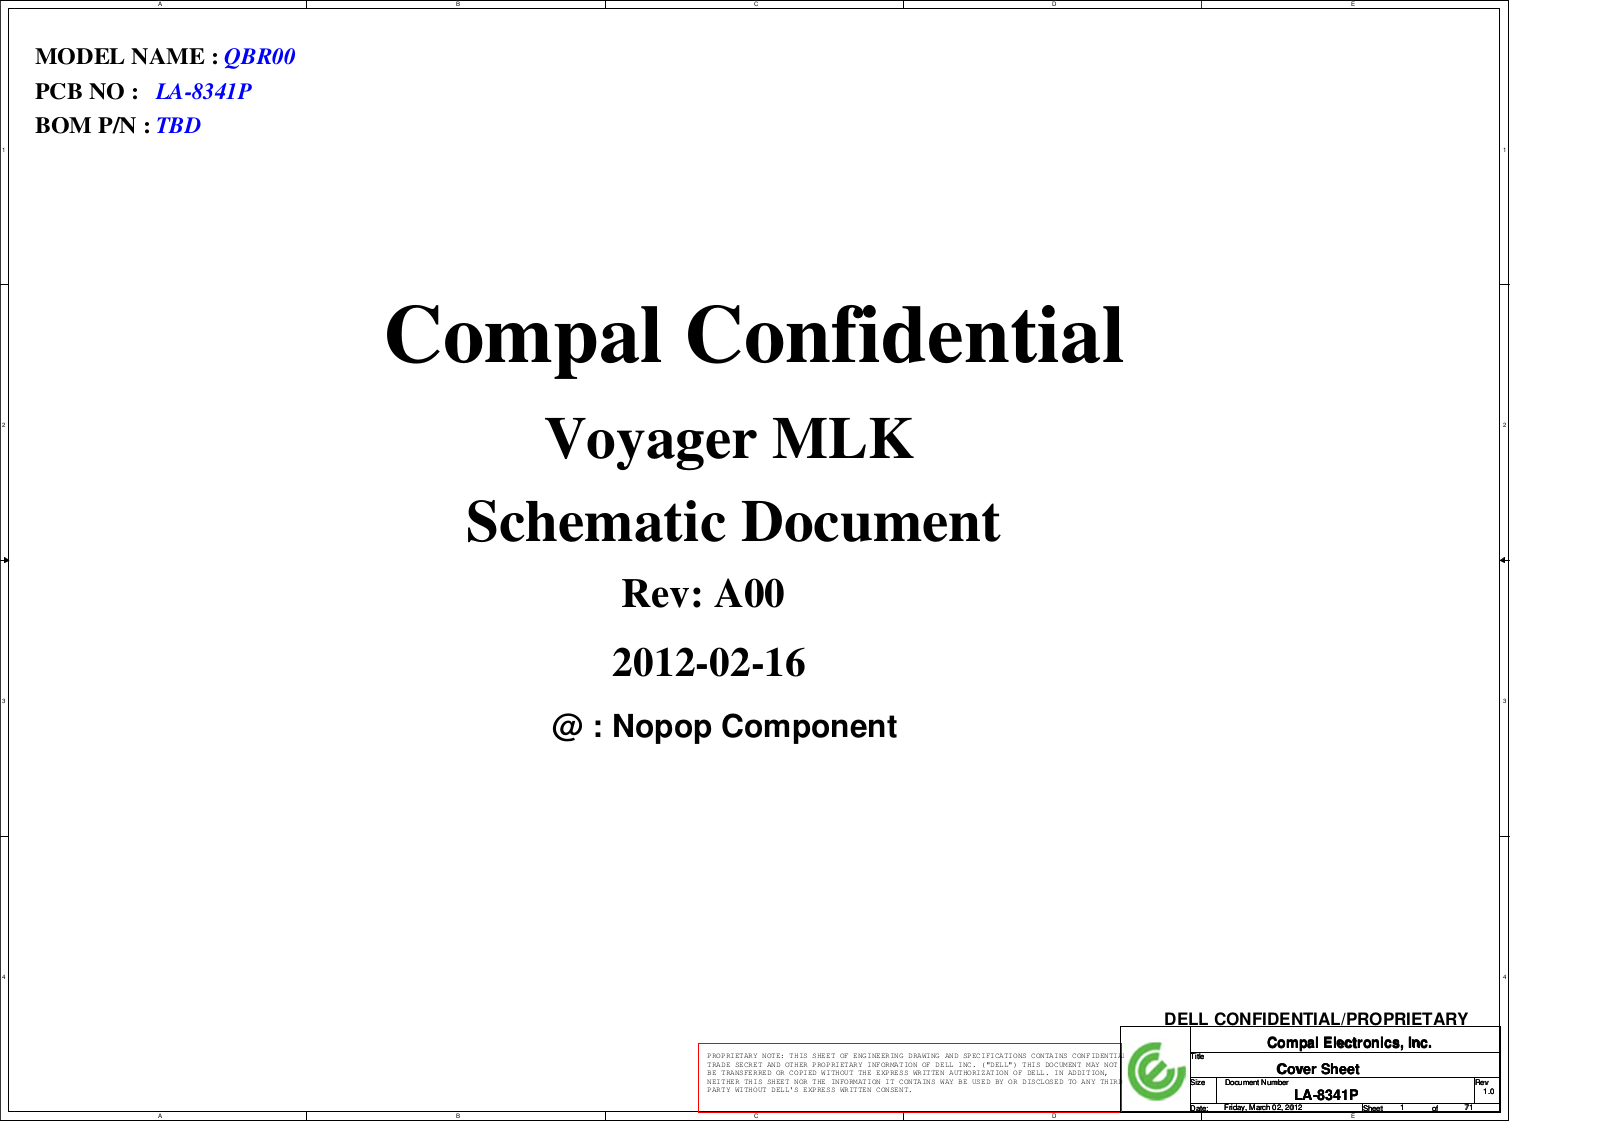 Compal LA-8341P QBR00, Alienware M17x R4, LA-8341P  Voyager MLK Schematic